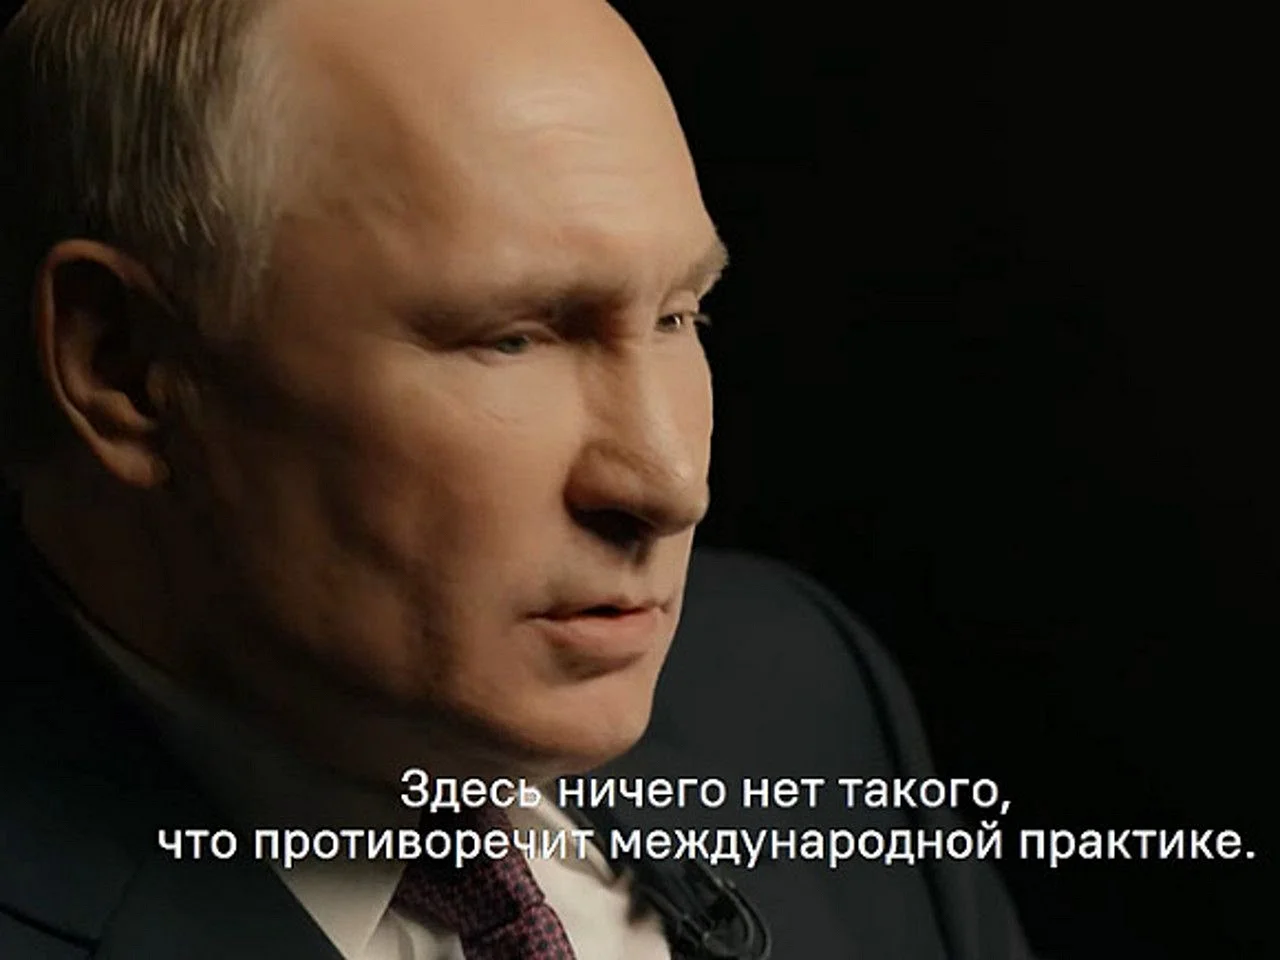 Недовольство народа Путиным в картинках